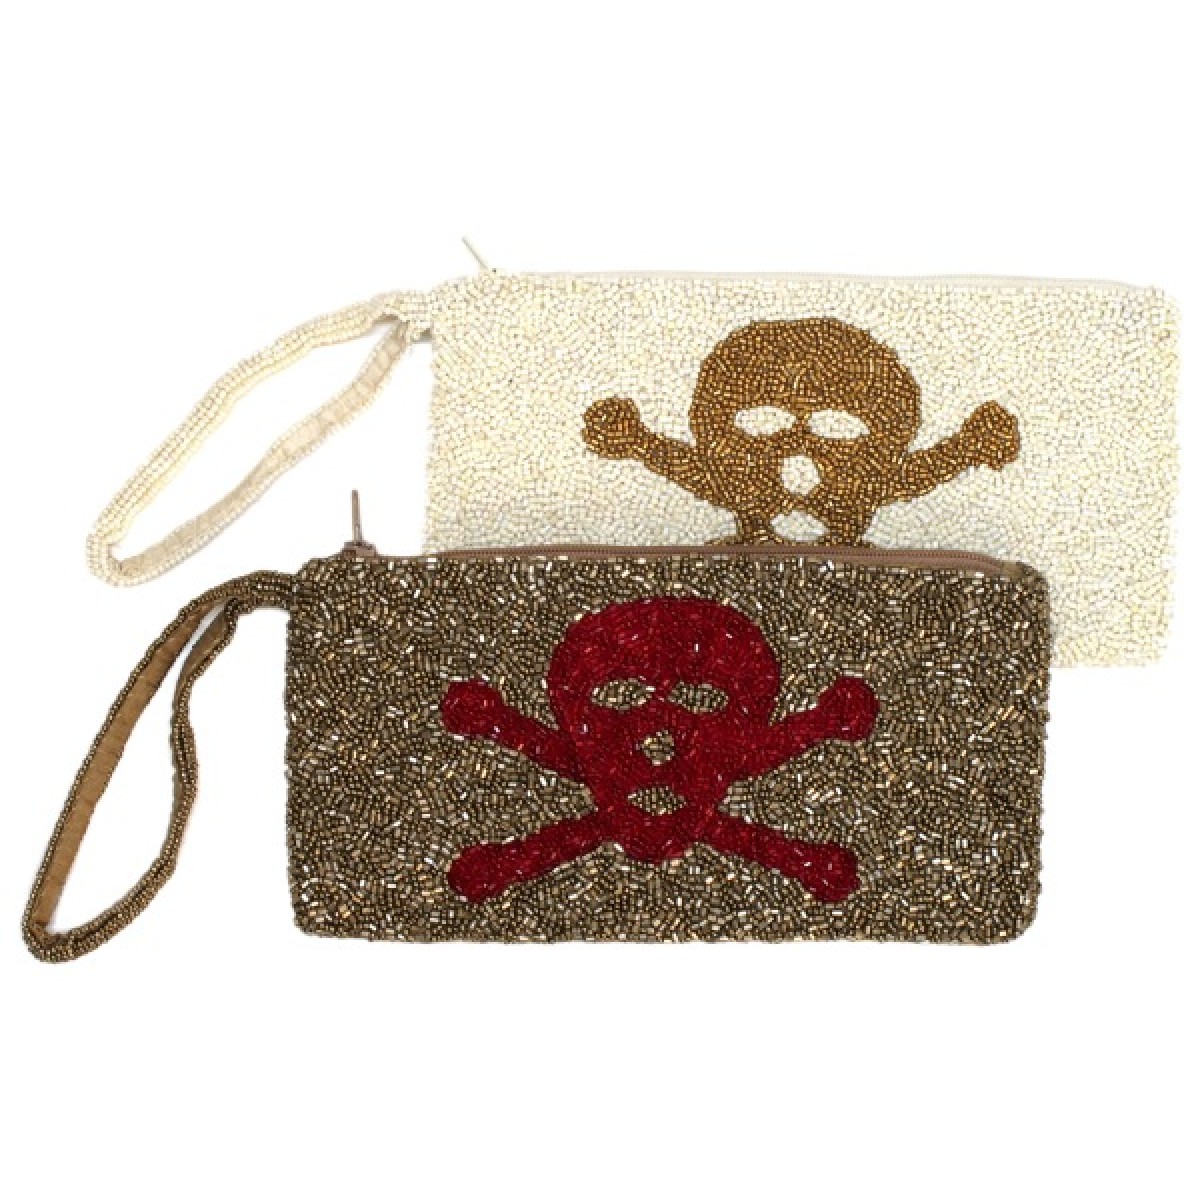 Pirate Bag